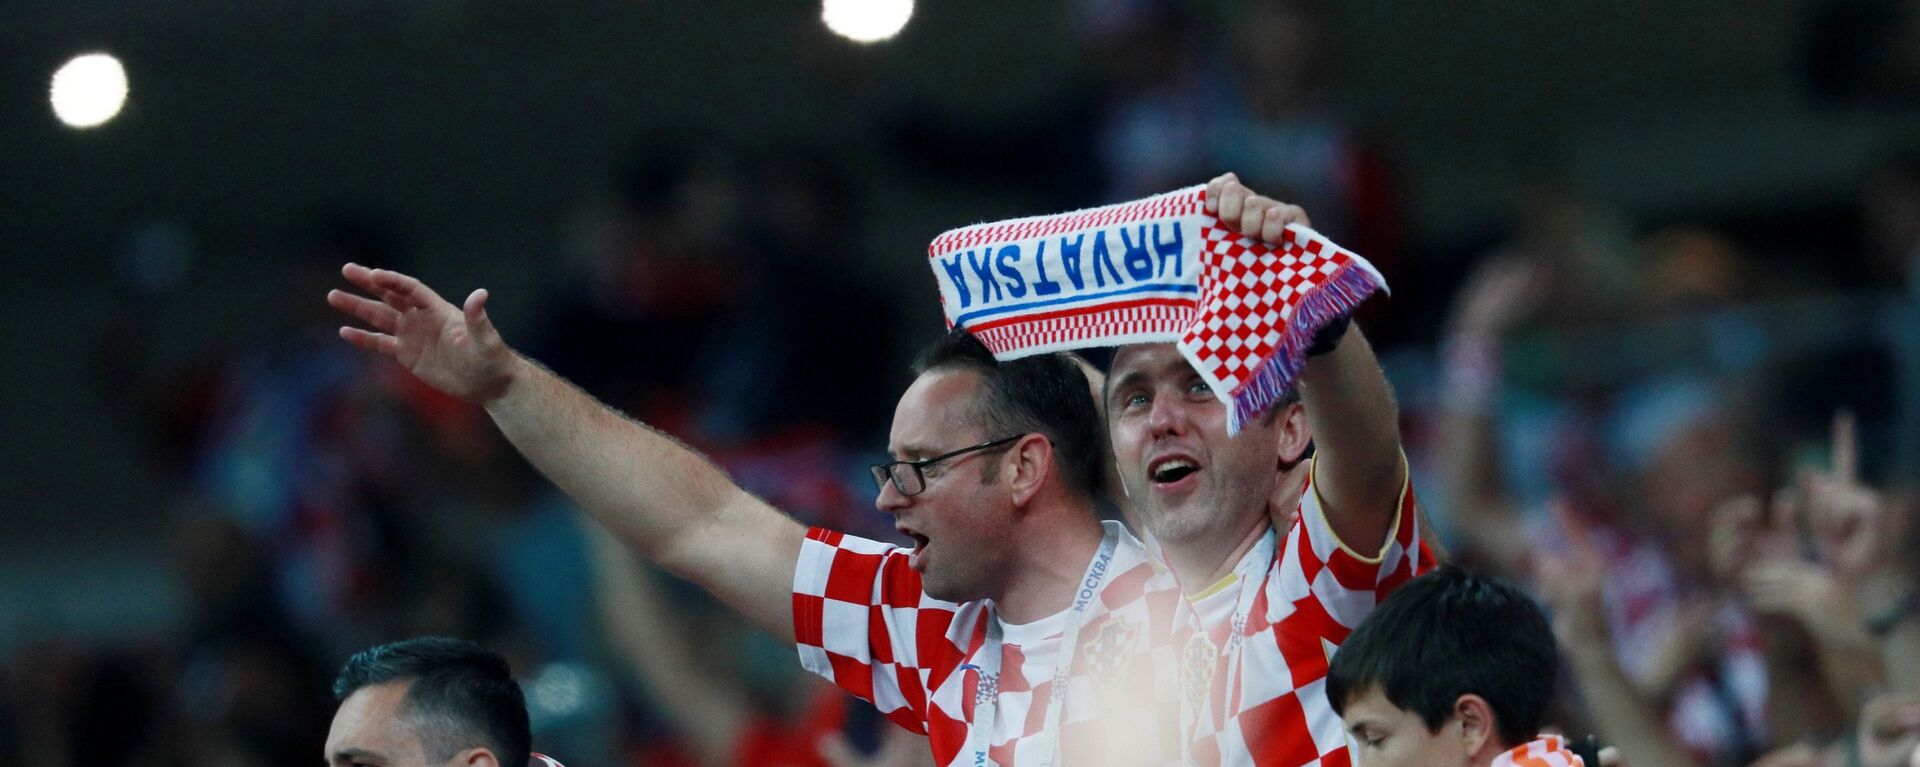 Navijači Hrvatske proslavljaju pobedu nad Engleskom i plasman u finale - Sputnik Srbija, 1920, 14.11.2021